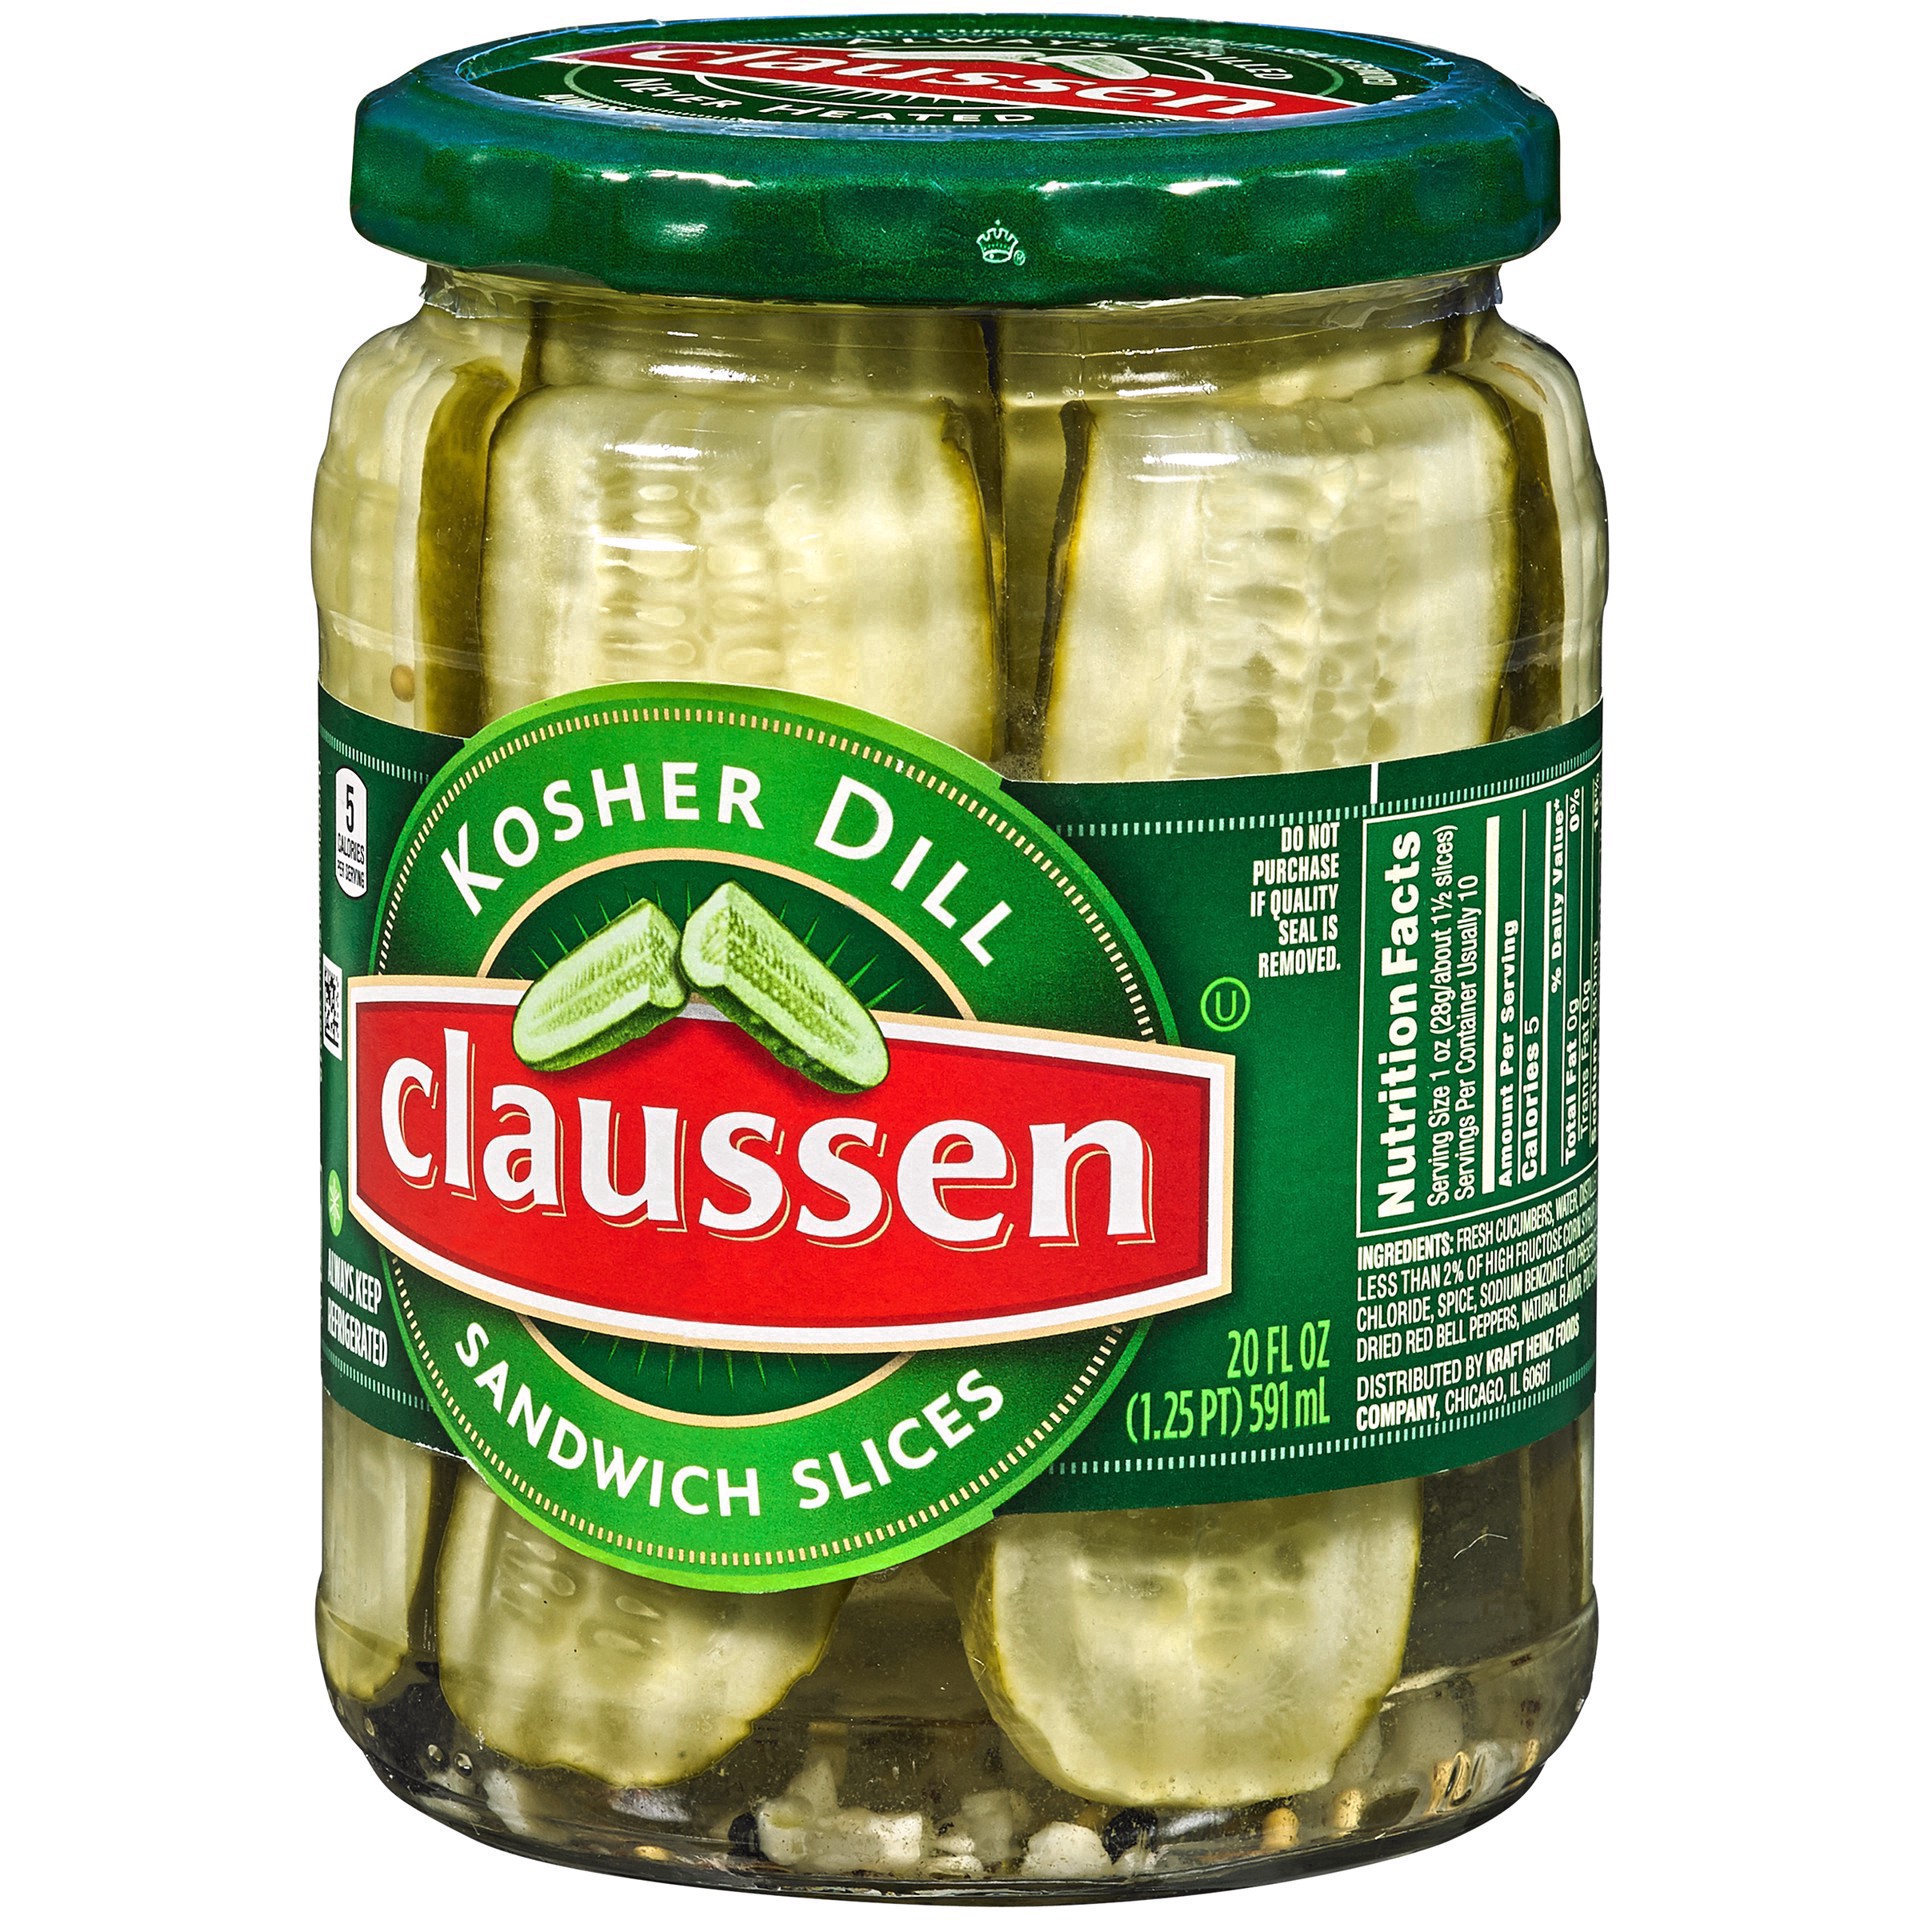 slide 88 of 144, Claussen Kosher Dill Pickle Sandwich Slices, 20 fl. oz. Jar, 20 fl oz